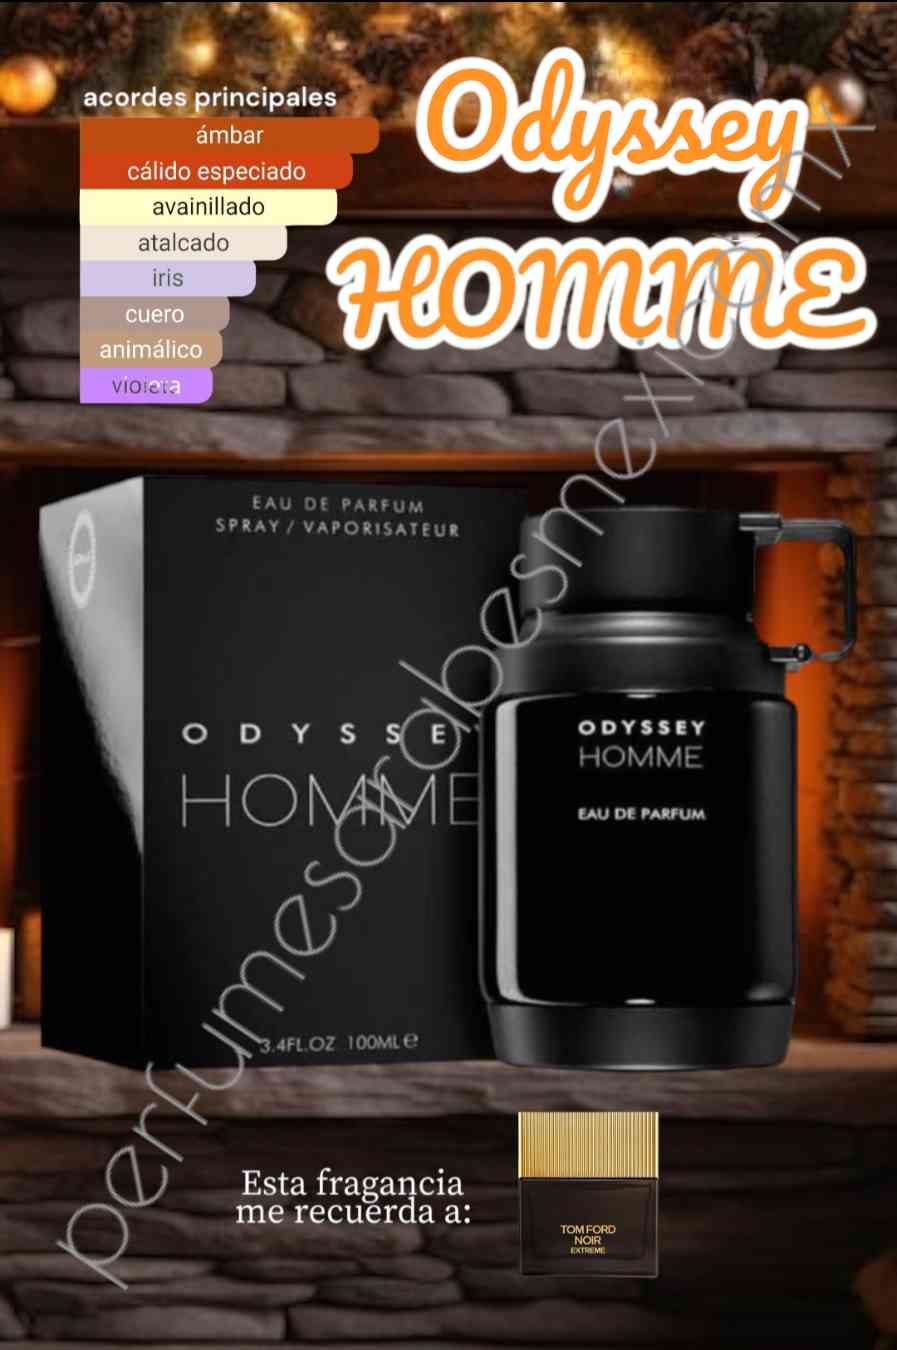 Odyssey Homme 100ml by ARMAF